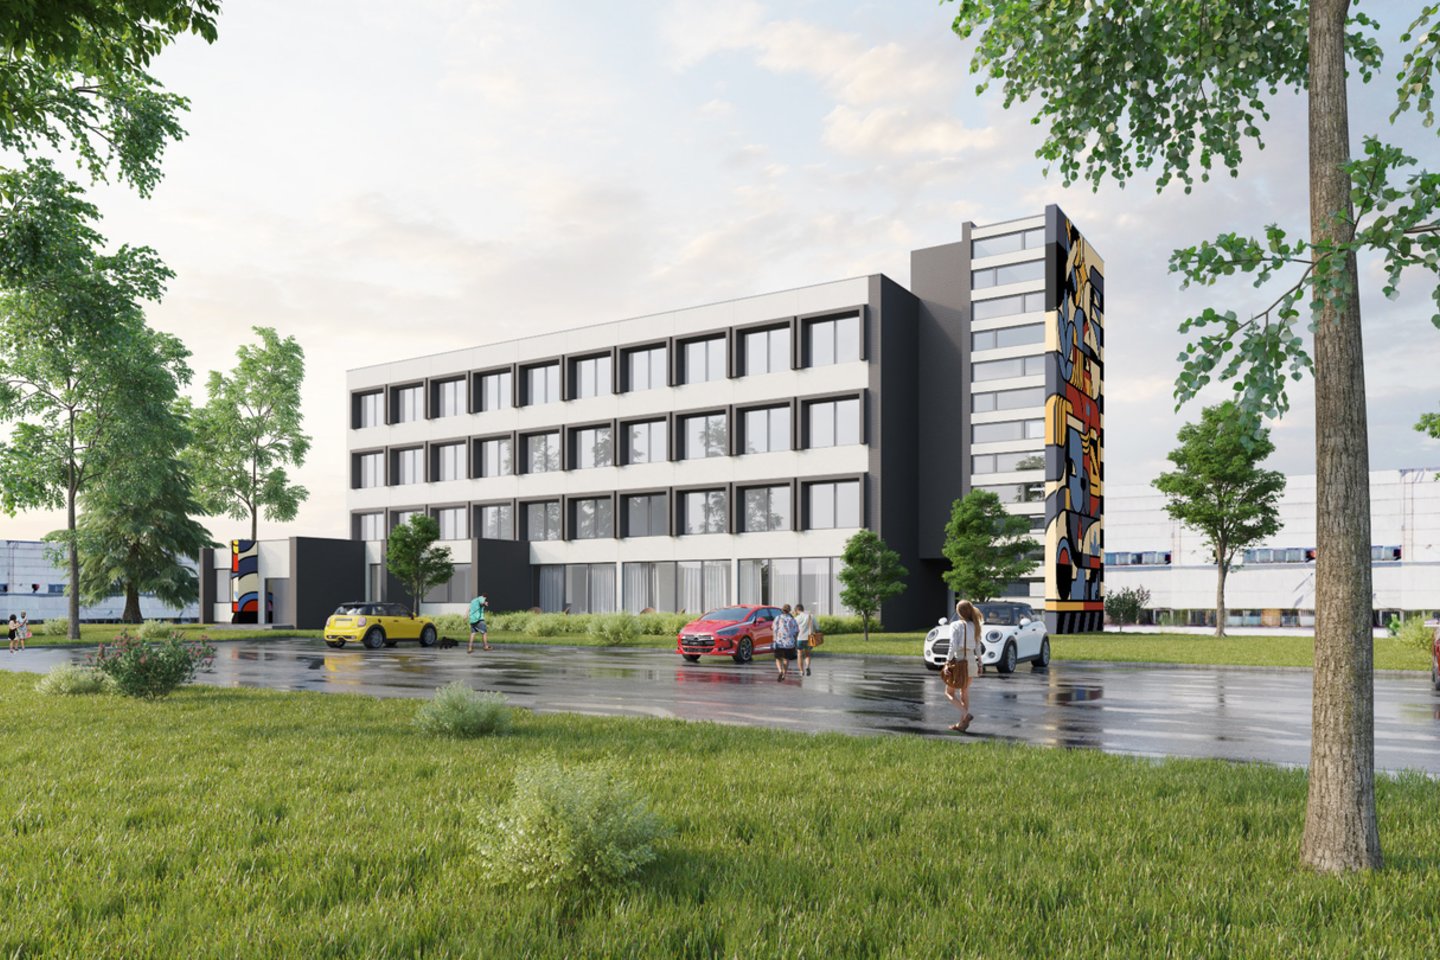 Pramonės, komercijos ir logistikos aktyvumu garsėjančiame Vilniaus Panerių mikrorajone, Kirtimų g. 51A, pristatomas nestandartinis kompaktiškų būstų ir biurų projektas.<br>Vizual.